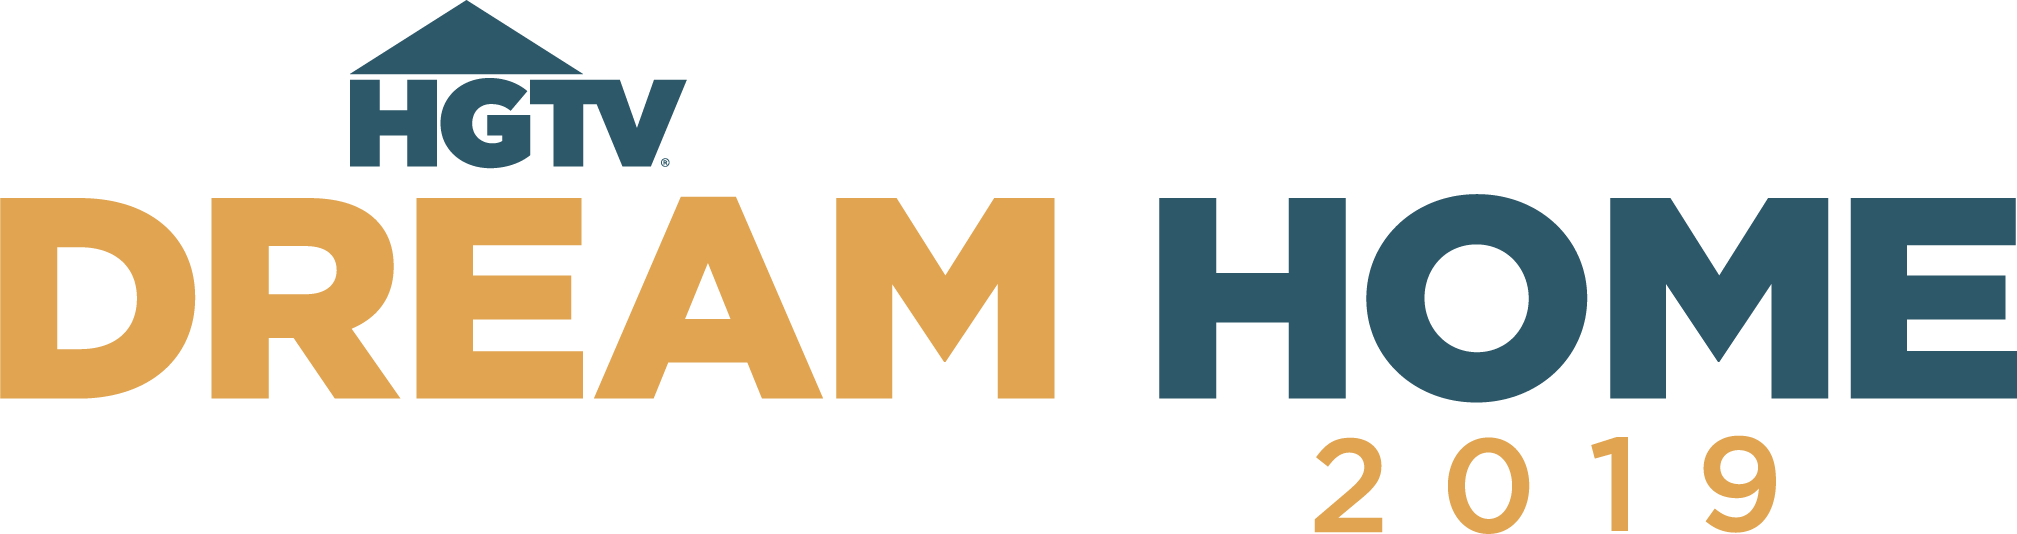 Hgtv.com Logo - HGTV Dream Home 2019